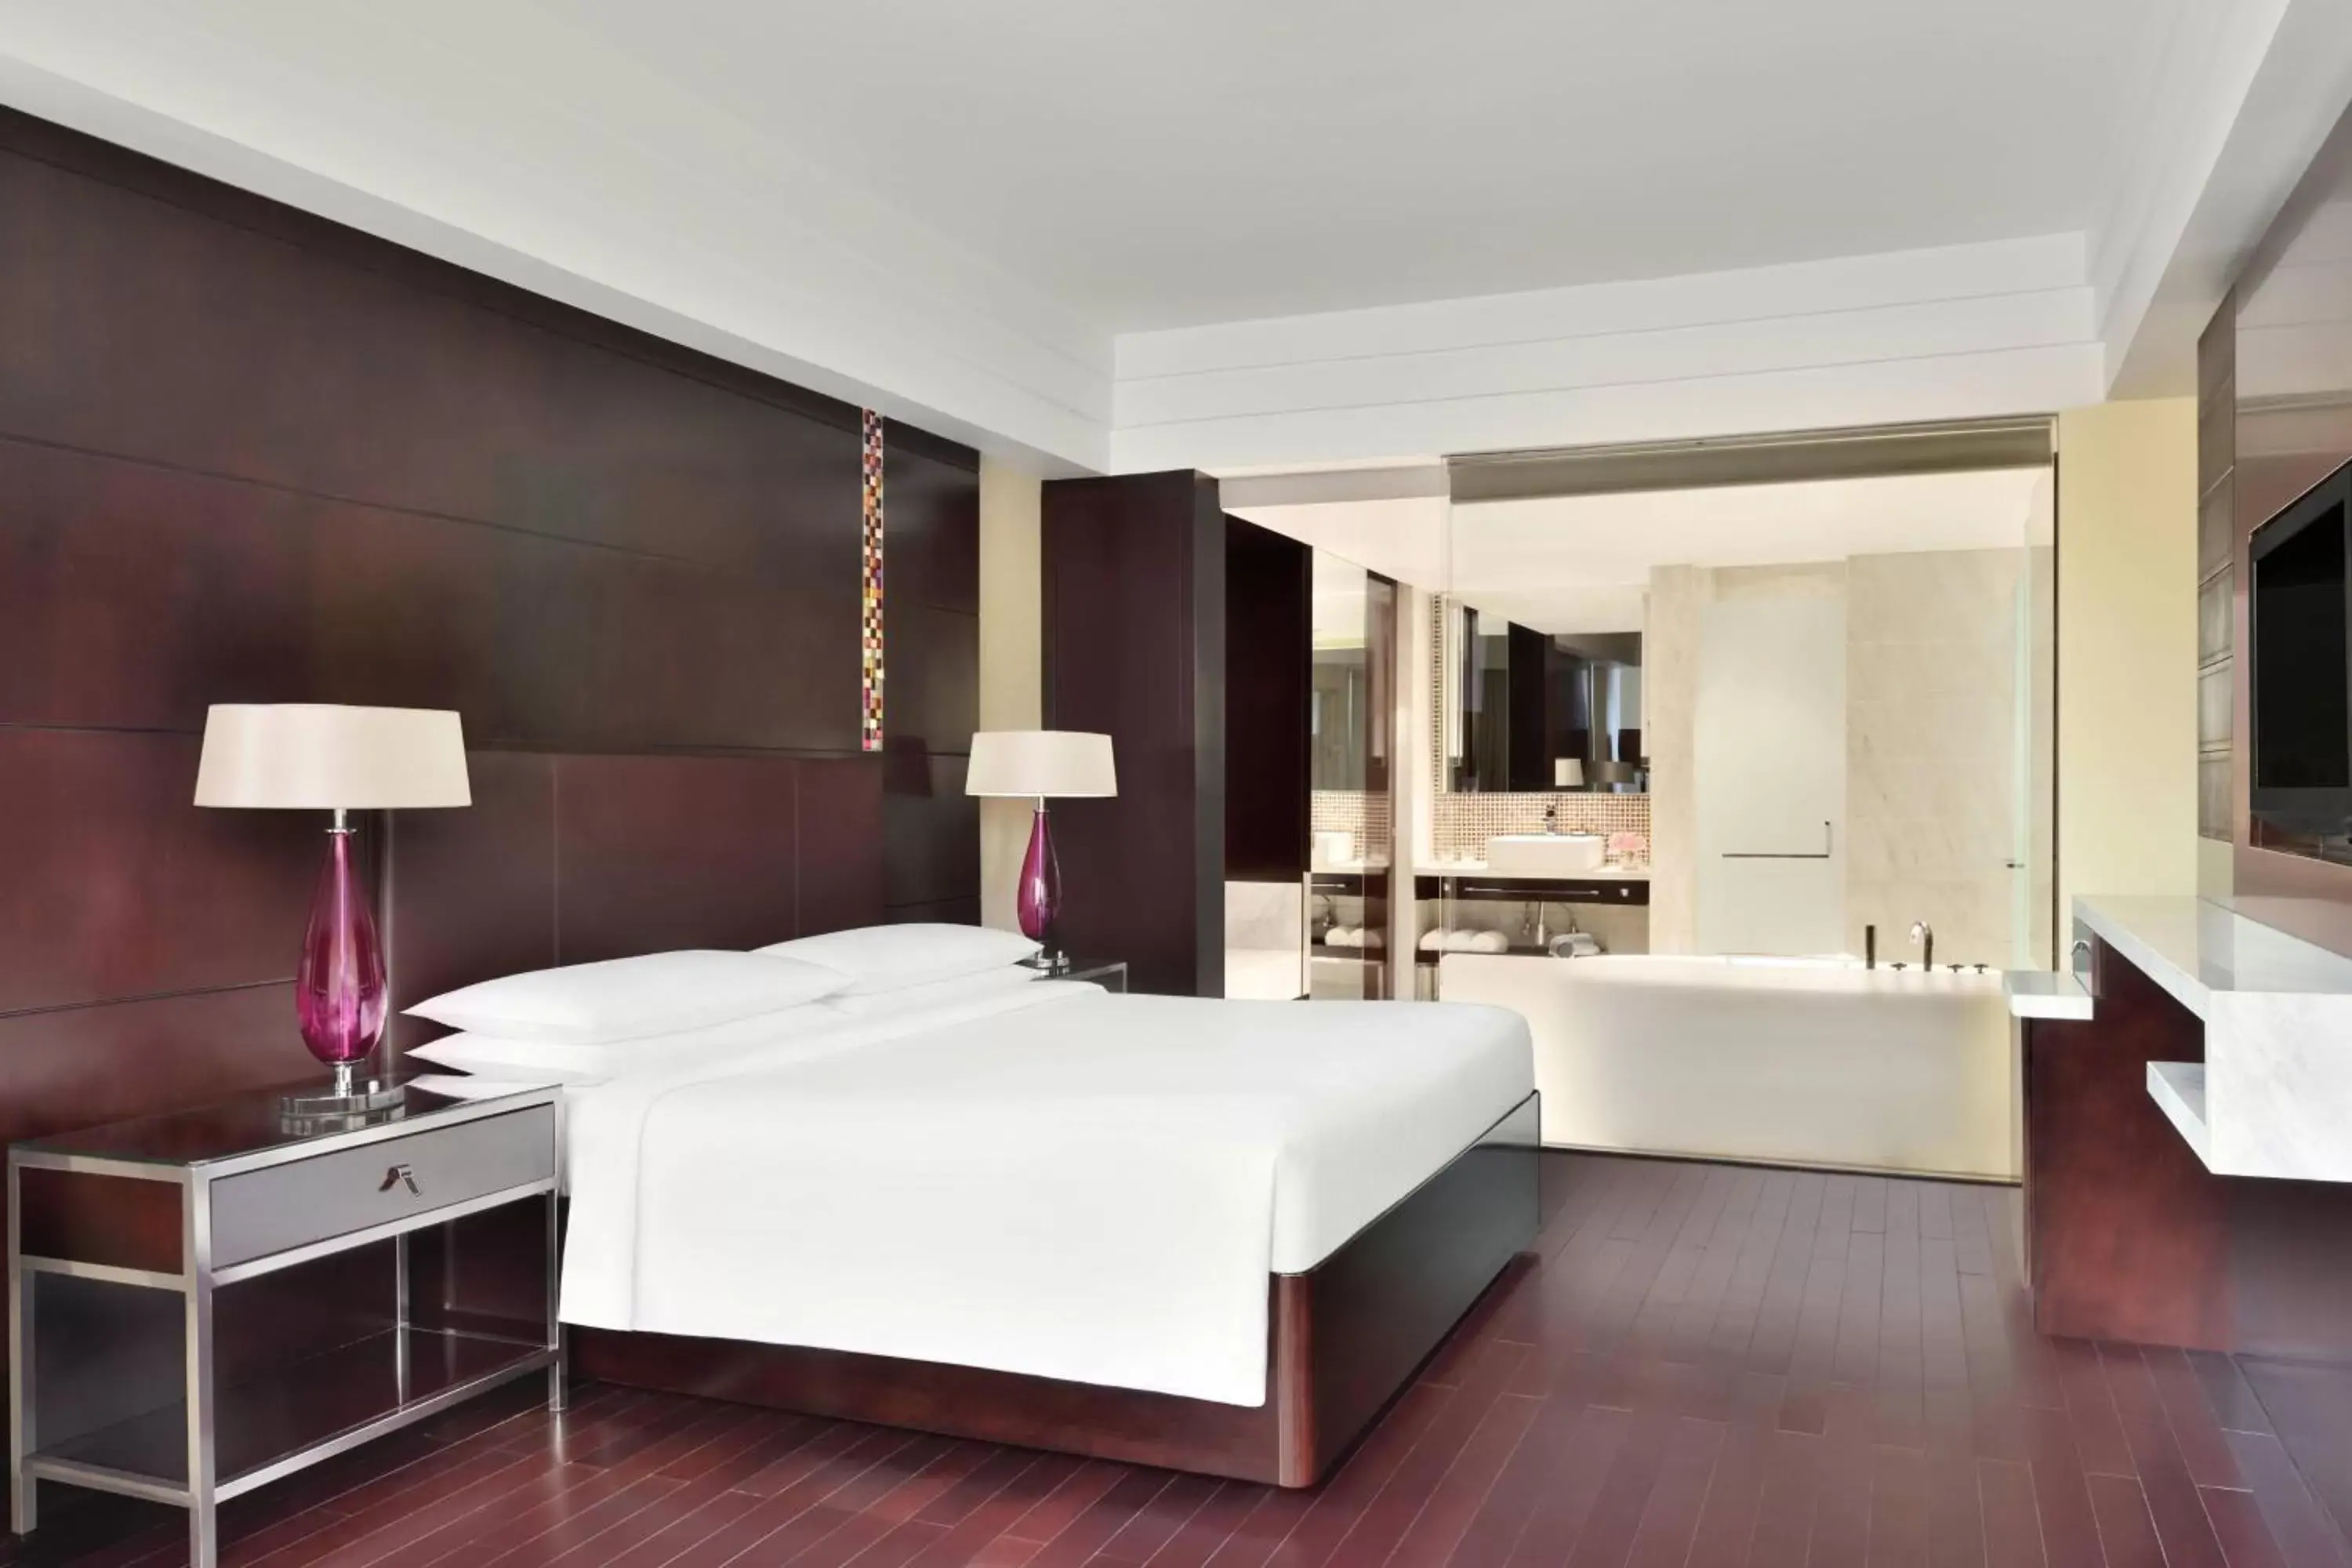 Bedroom in Jaipur Marriott Hotel